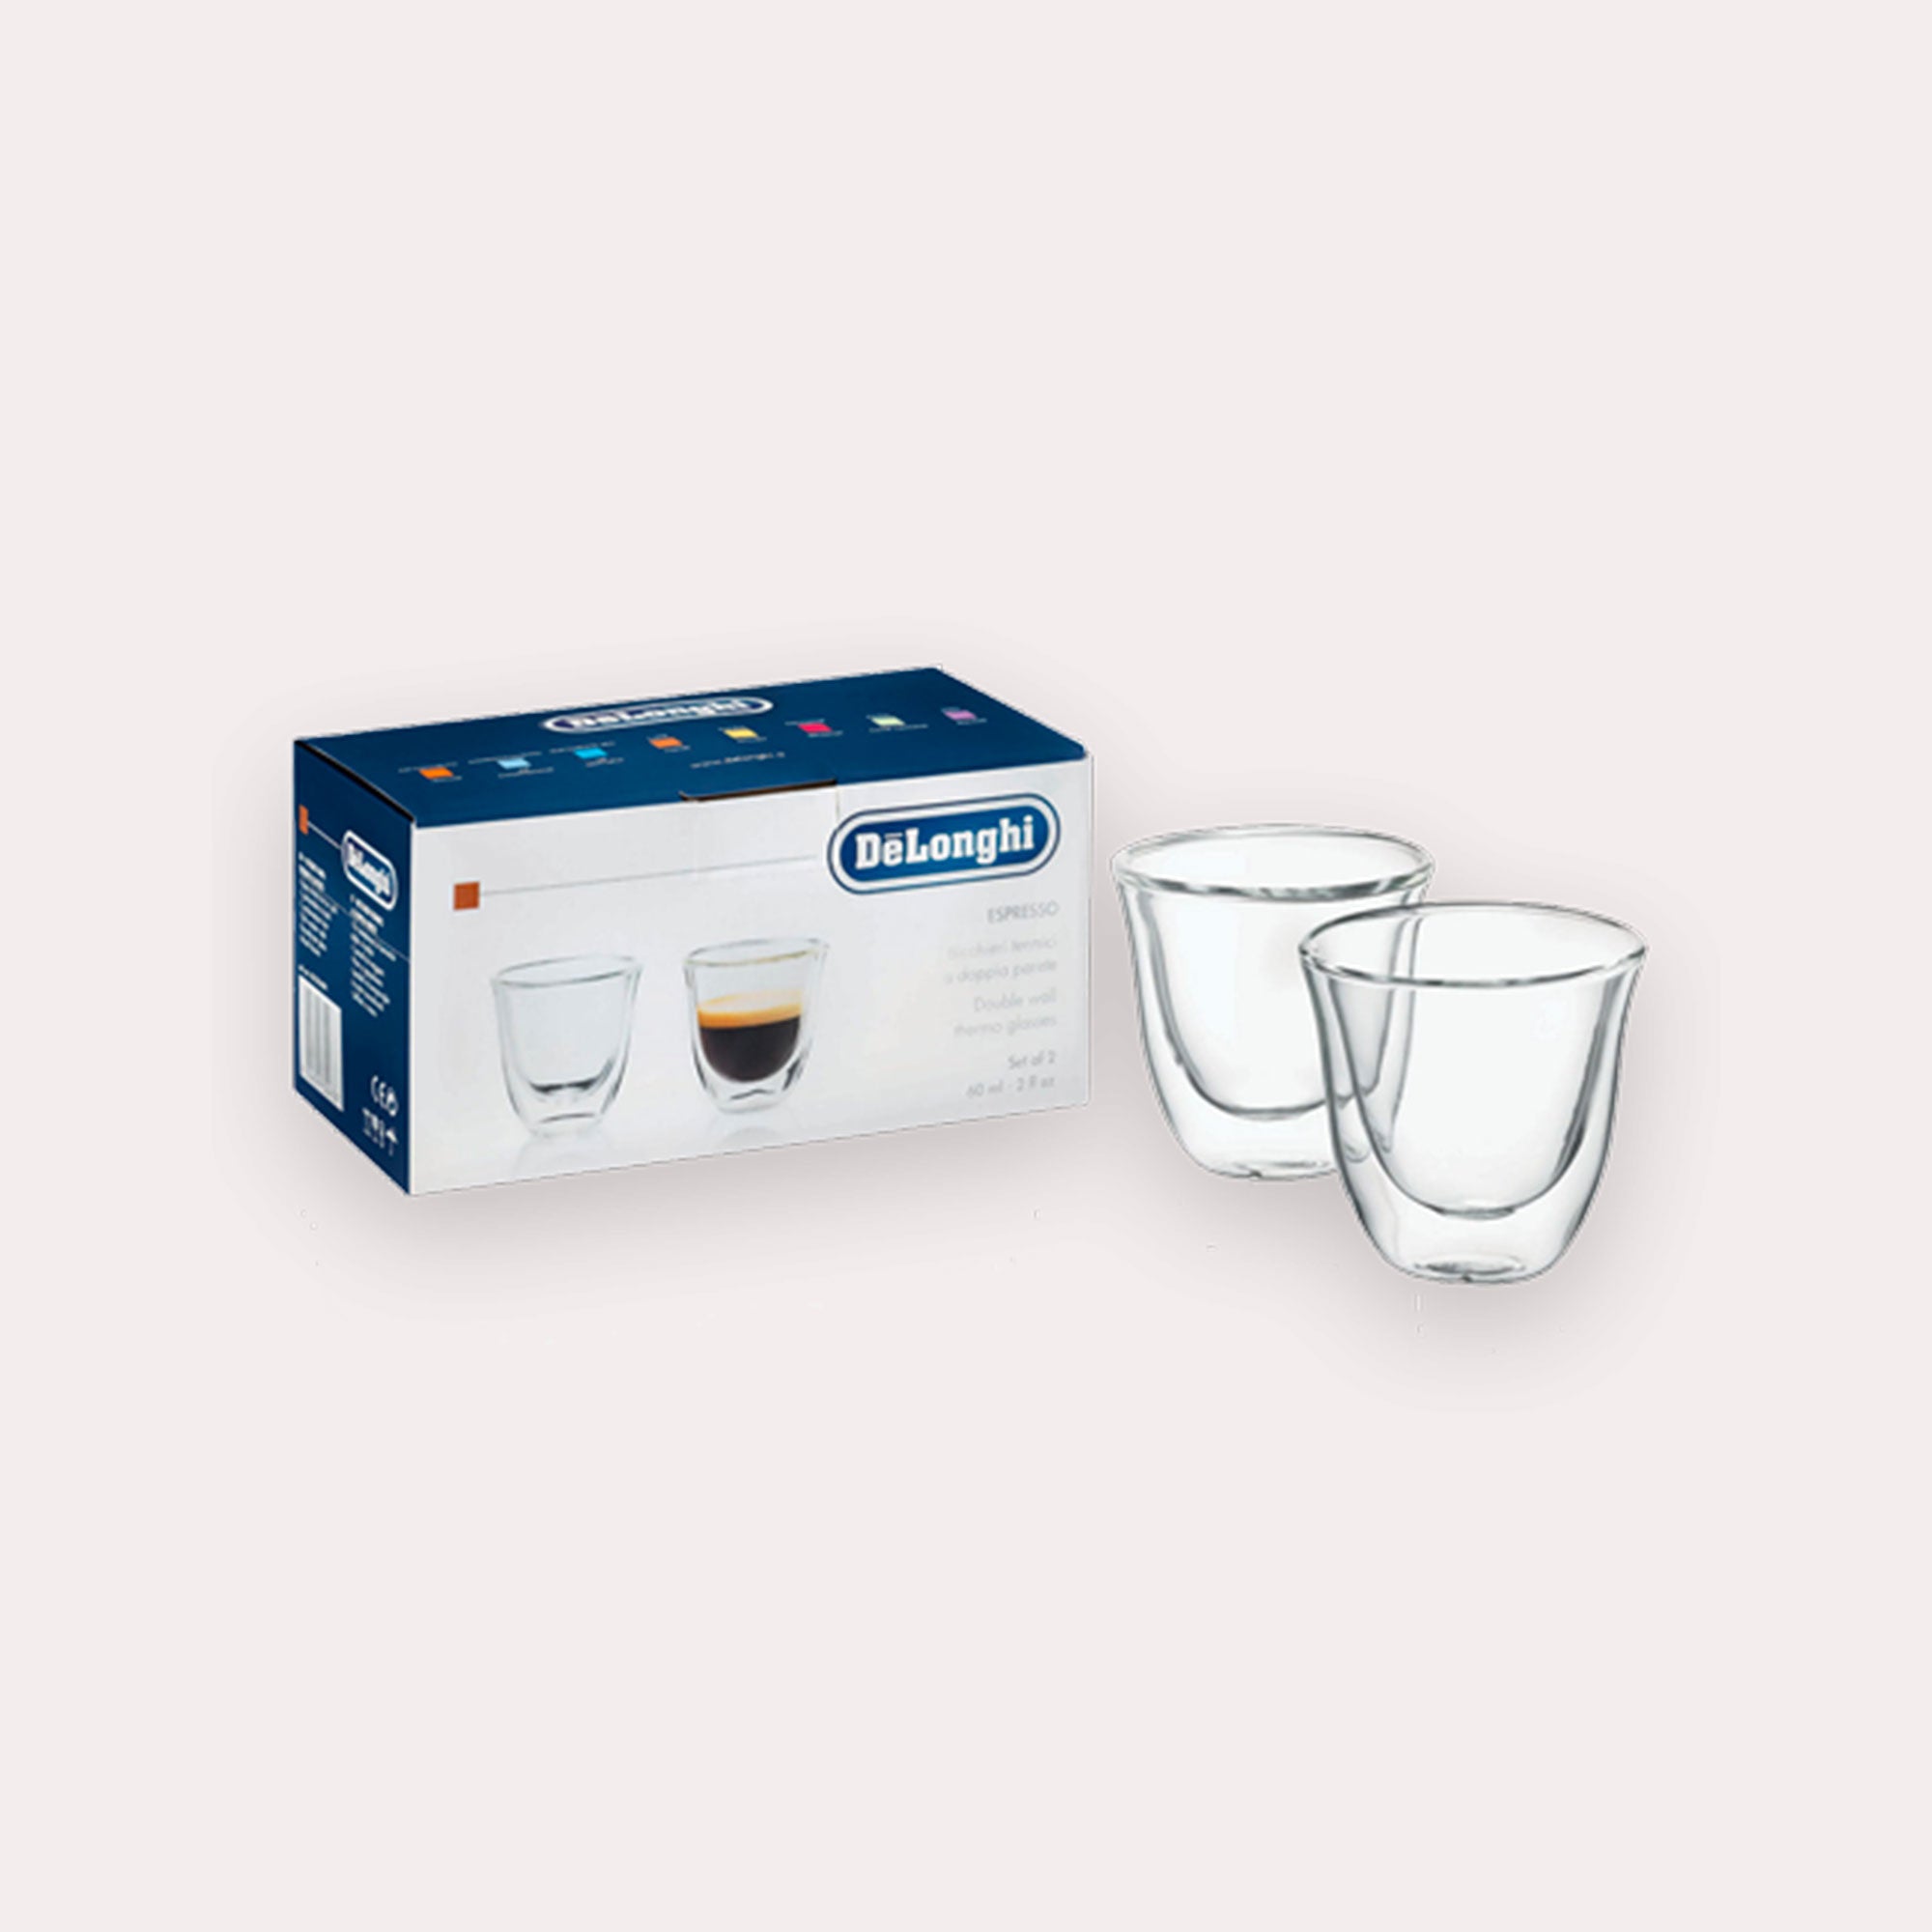 Delonghi : tasses double paroi en verre pour espresso